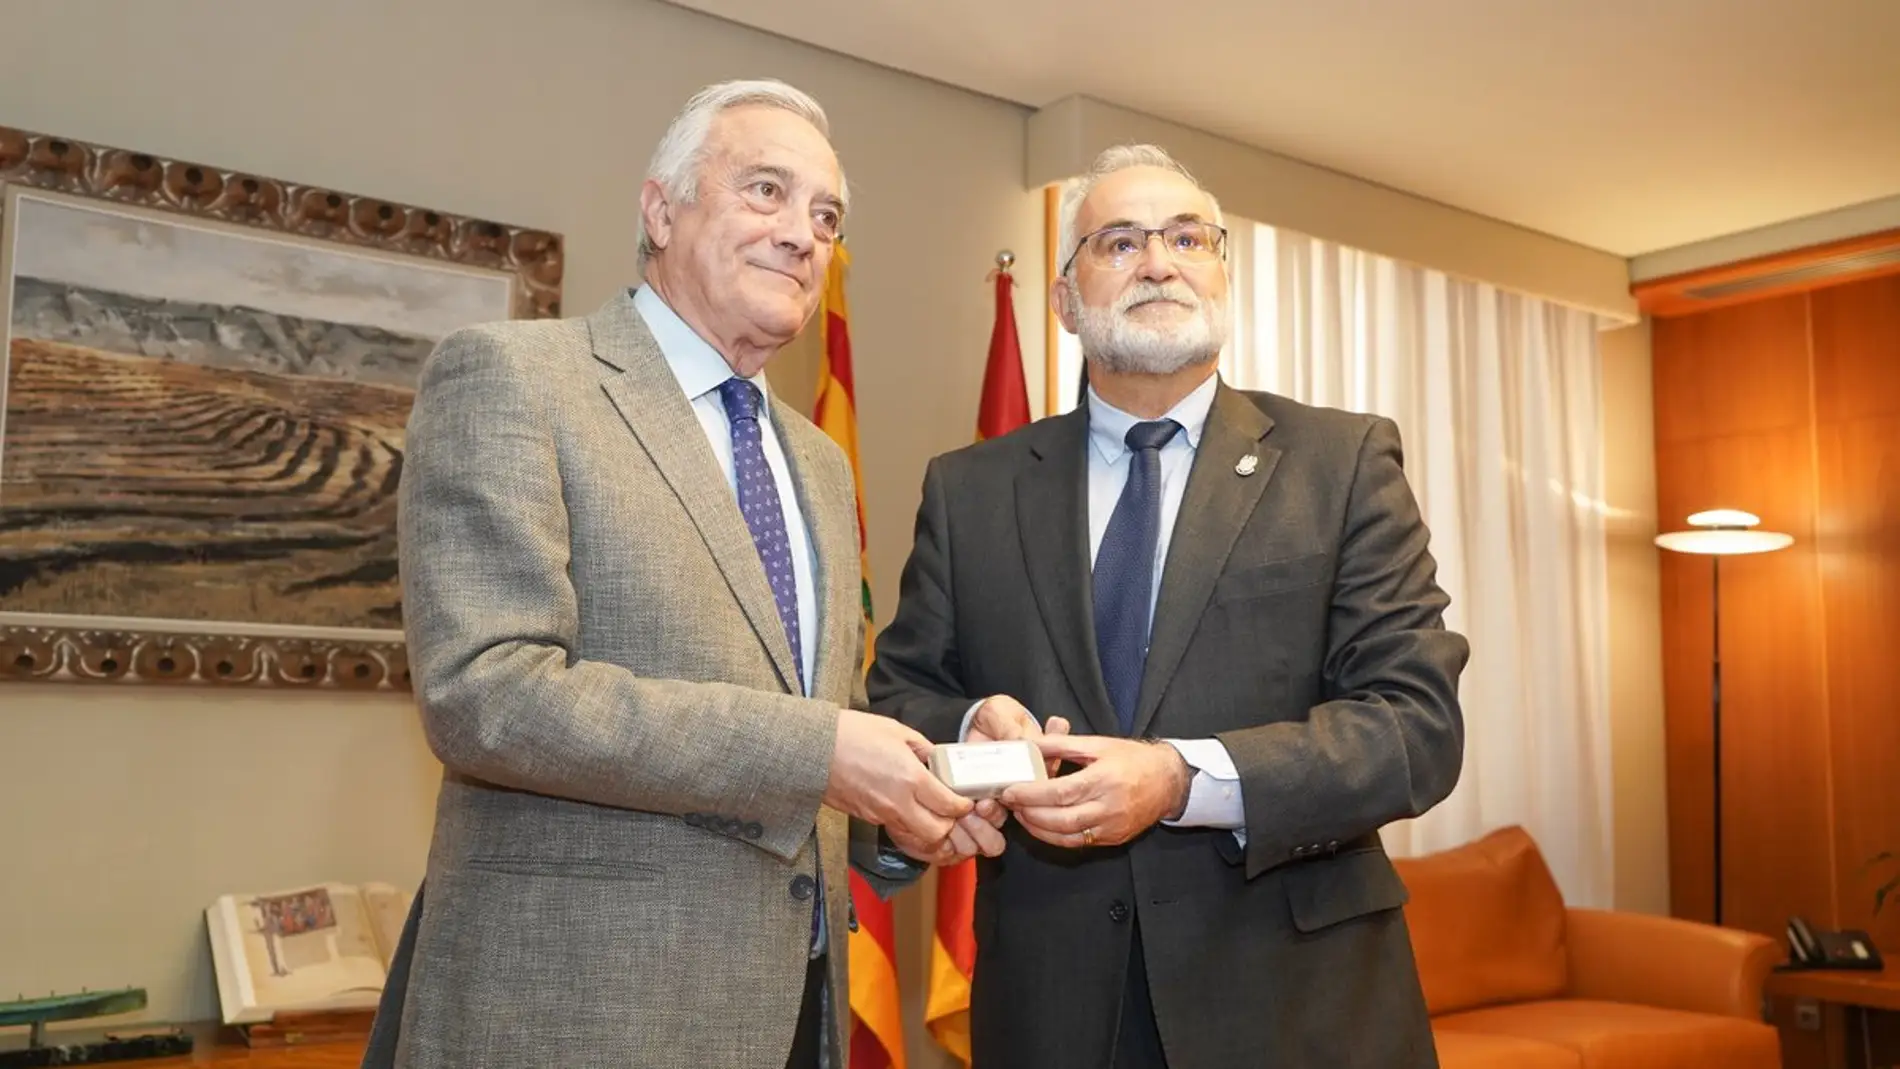 El presidente de las Cortes, Javier Sada, recibe el Informe Anual de manos del lugarteniente